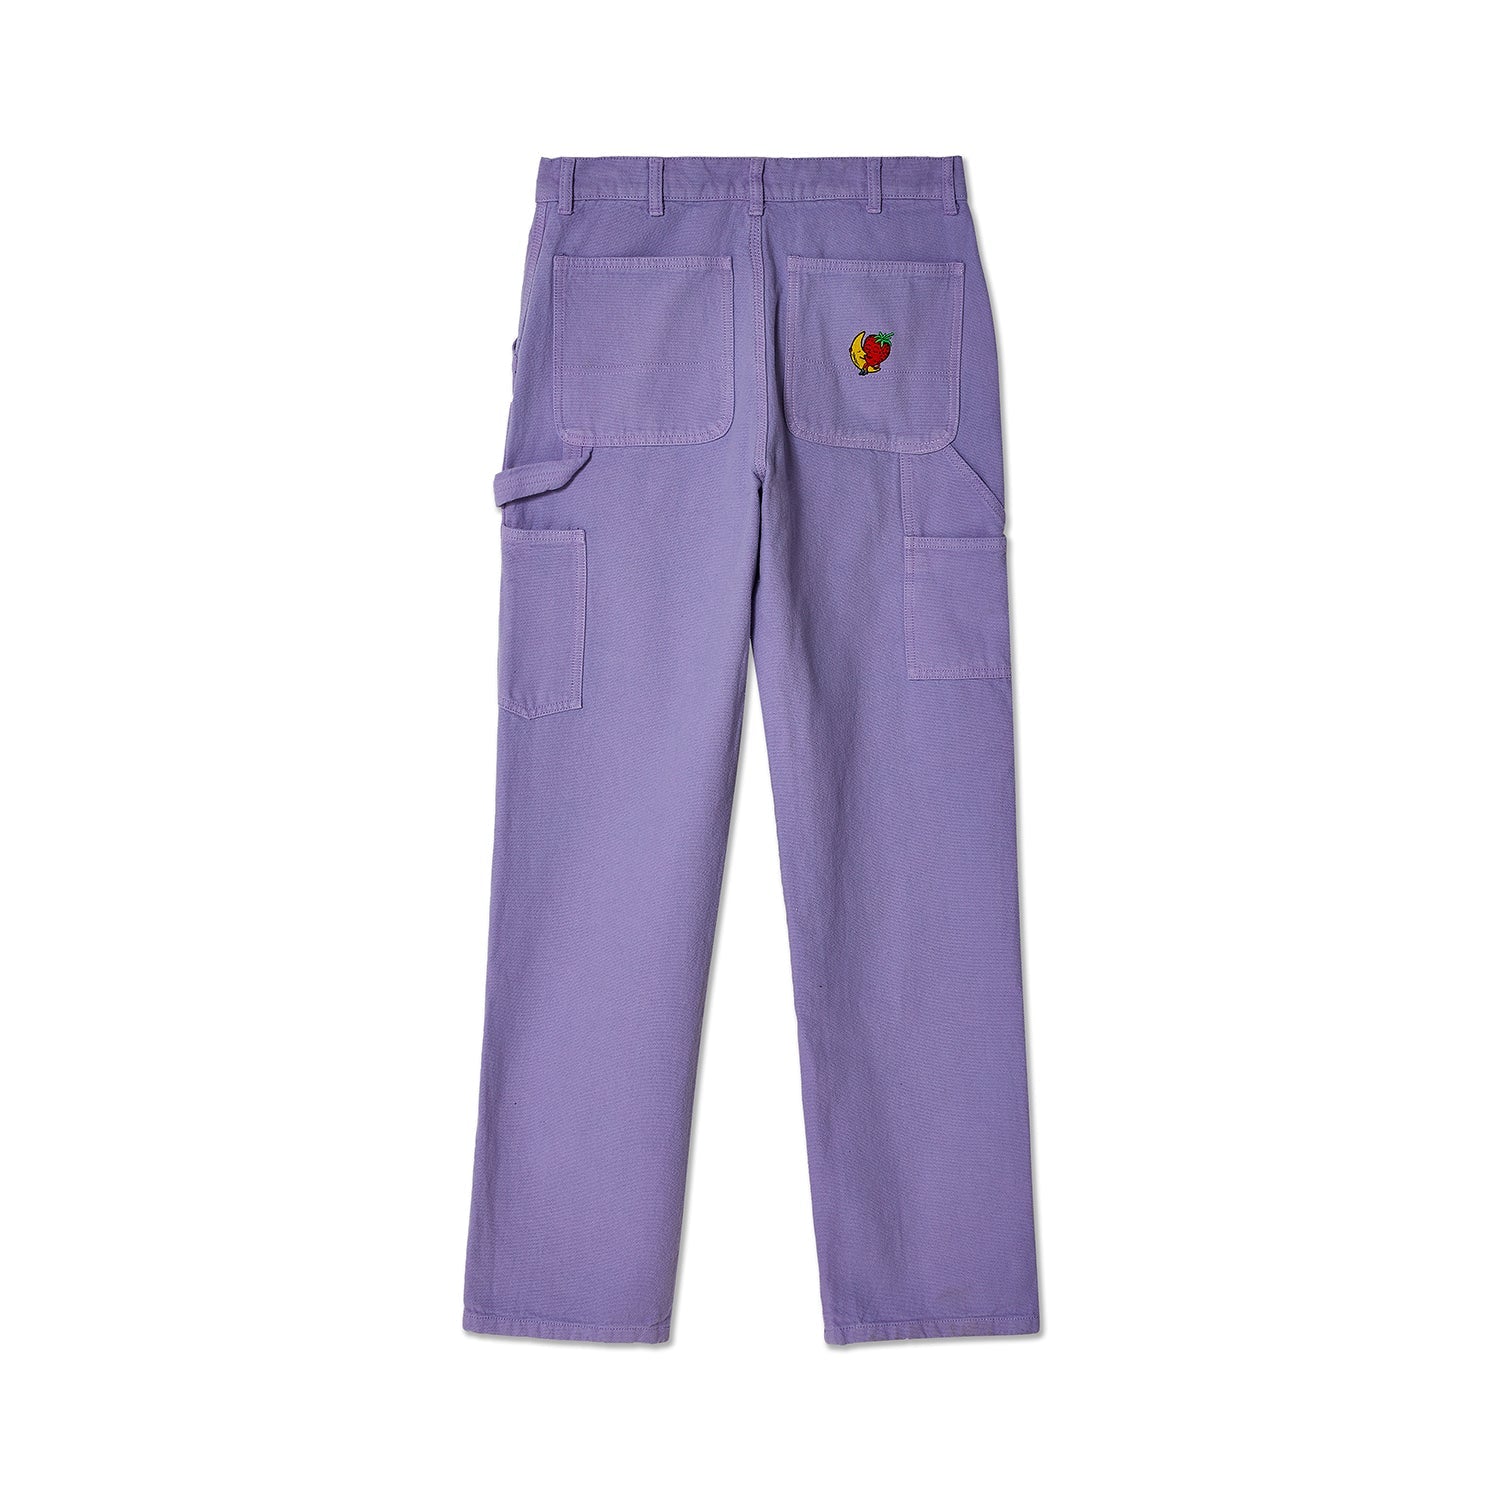 Sky High Farm Workwear Double Knee Pants Lilac Purple Back